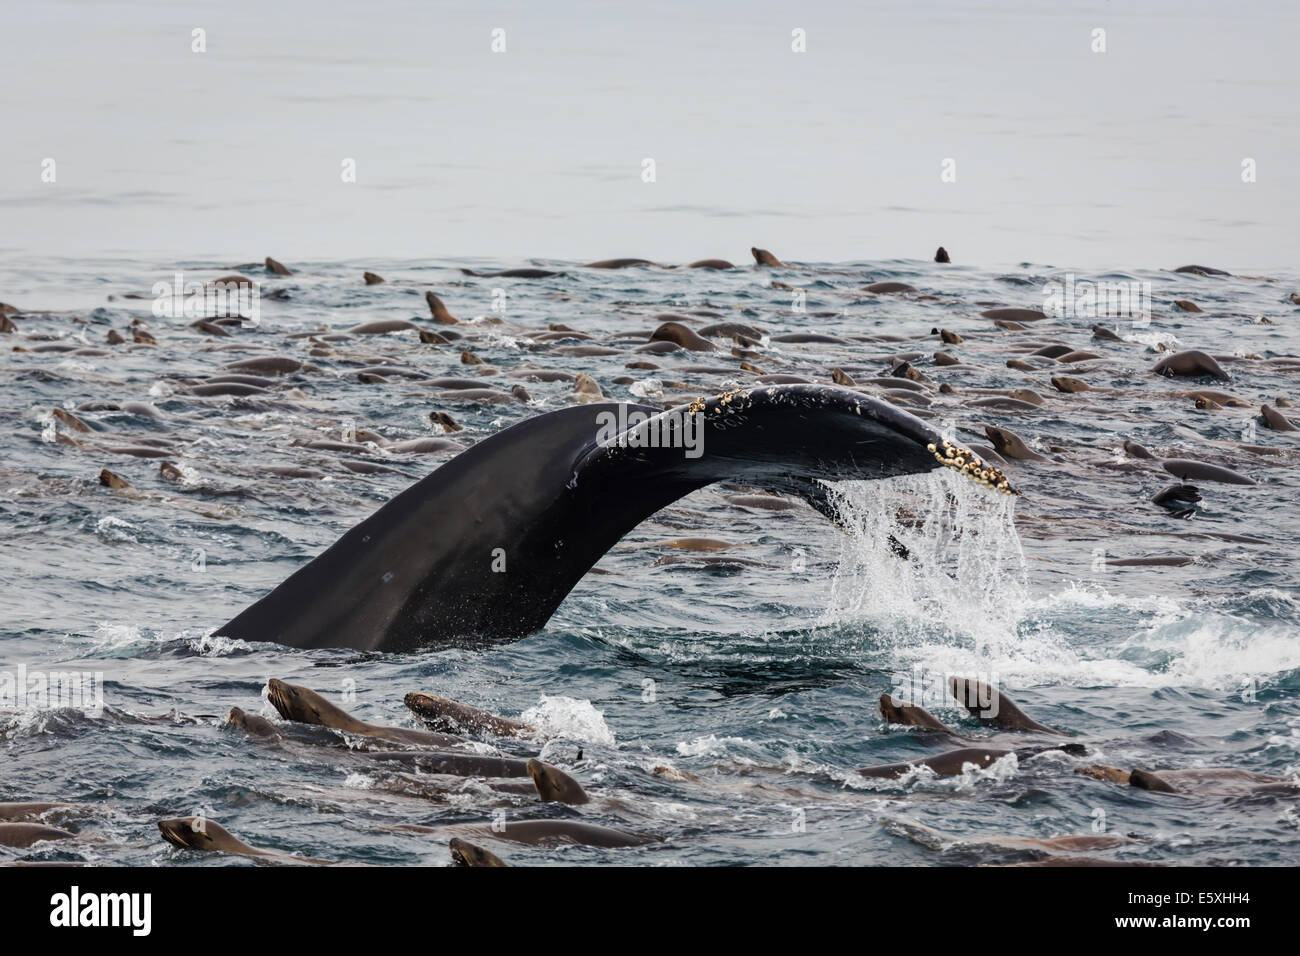 La baleine à bosse, Megaptera novaeangliae, le fluke, brise la surface au milieu d'une masse d'otaries qui se nourrissent Banque D'Images